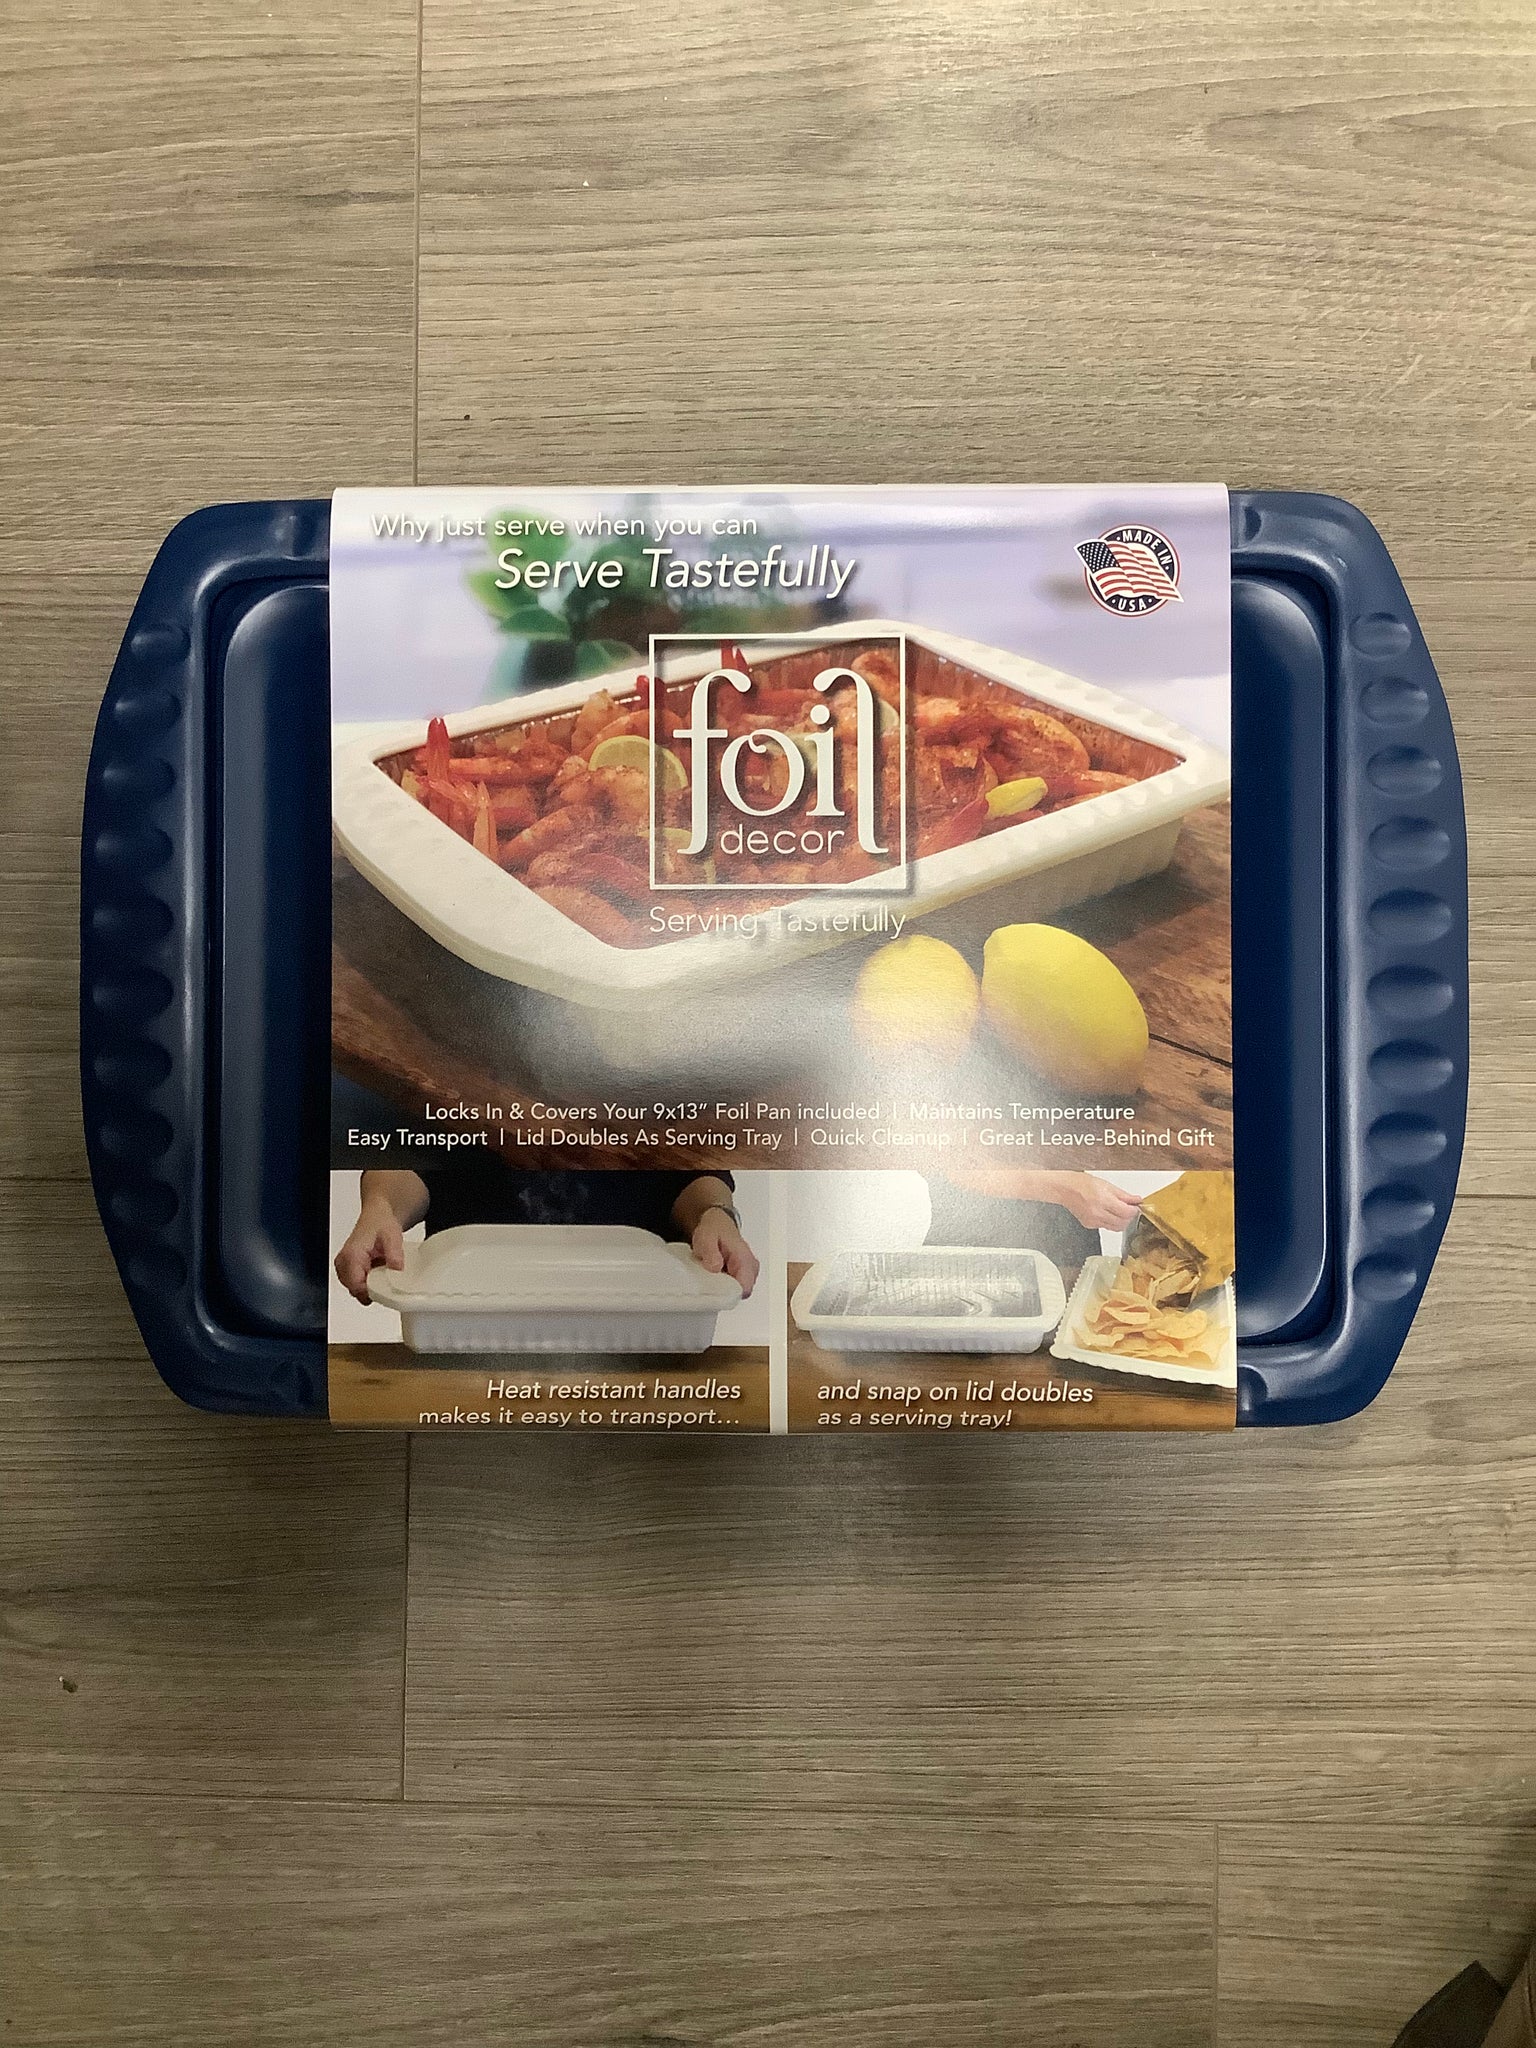 Foil Decor Serving and Casserole Carrier for 9x13 Foil Pans, Heat